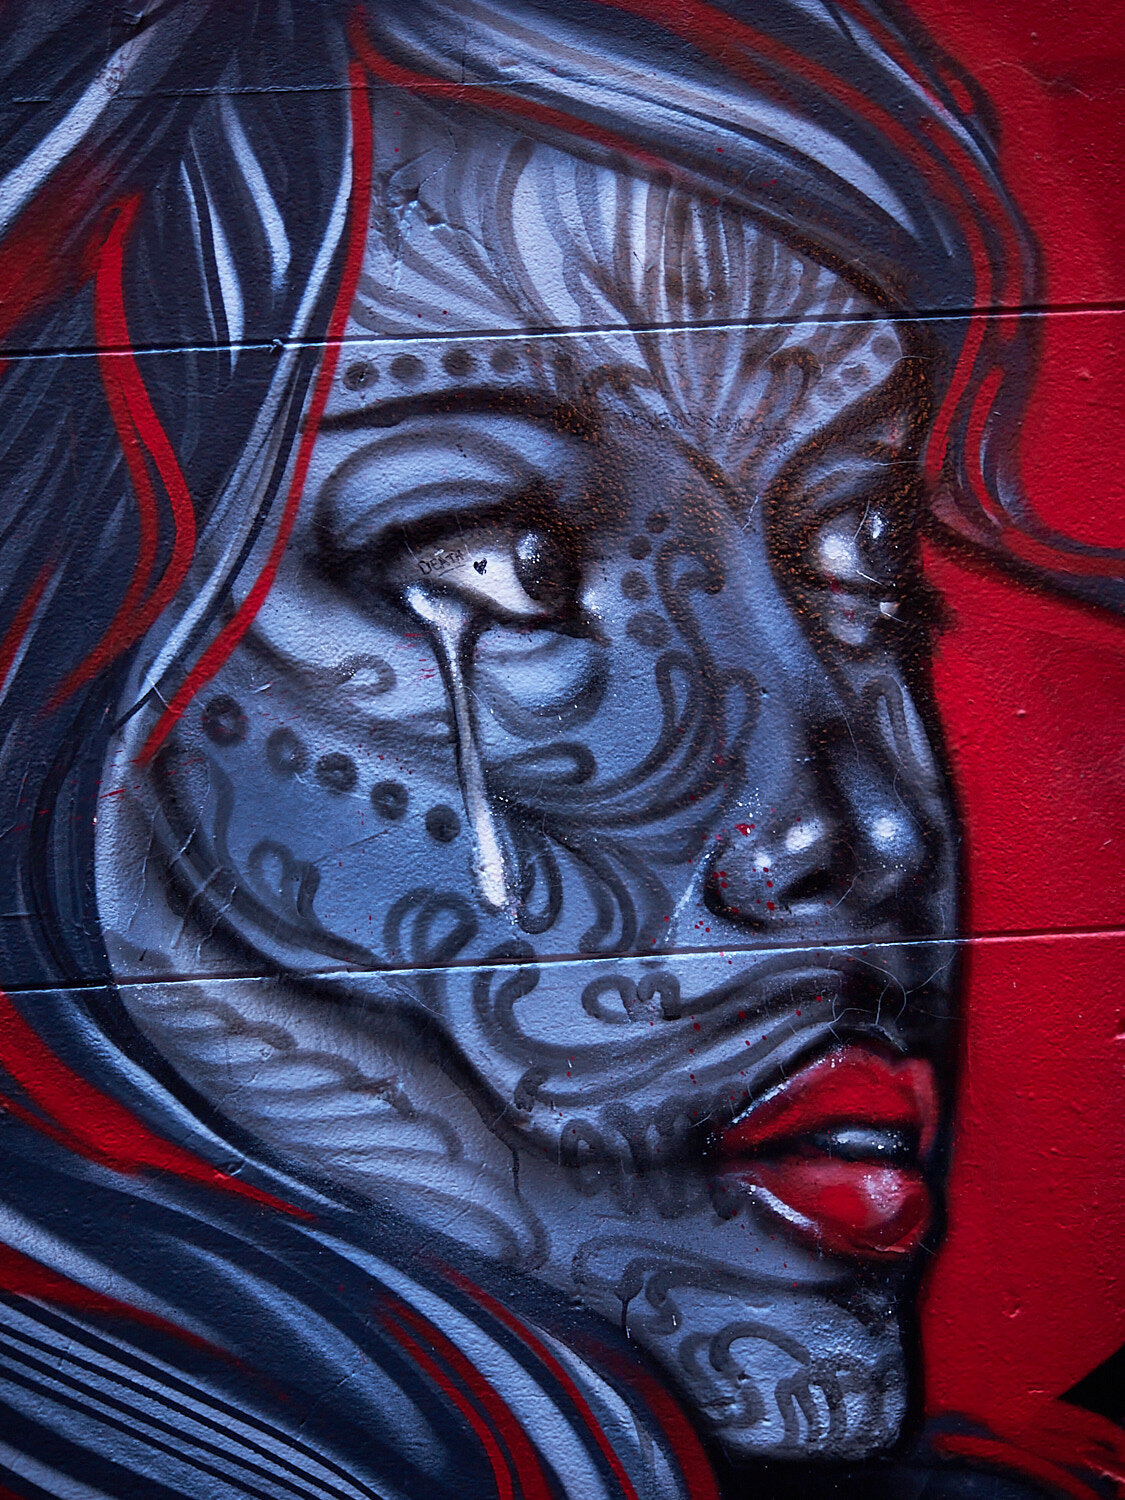  Street Art - Fitzroy 201207  